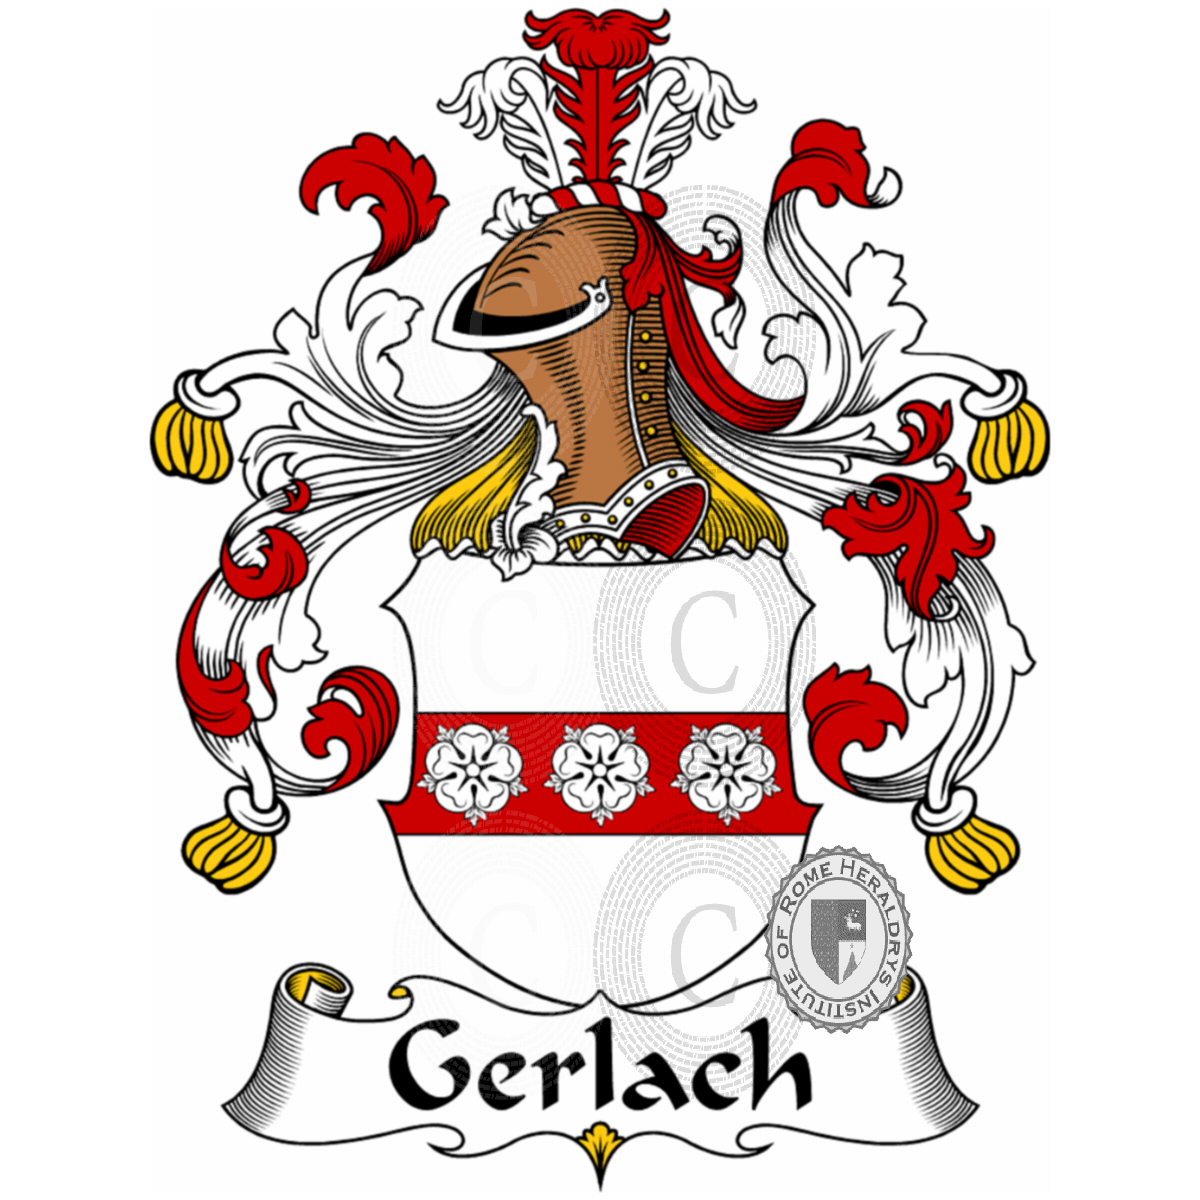 Stemma della famigliaGerlach, Gerlach de Gerlachhein,Gerlaci,Gerlacus